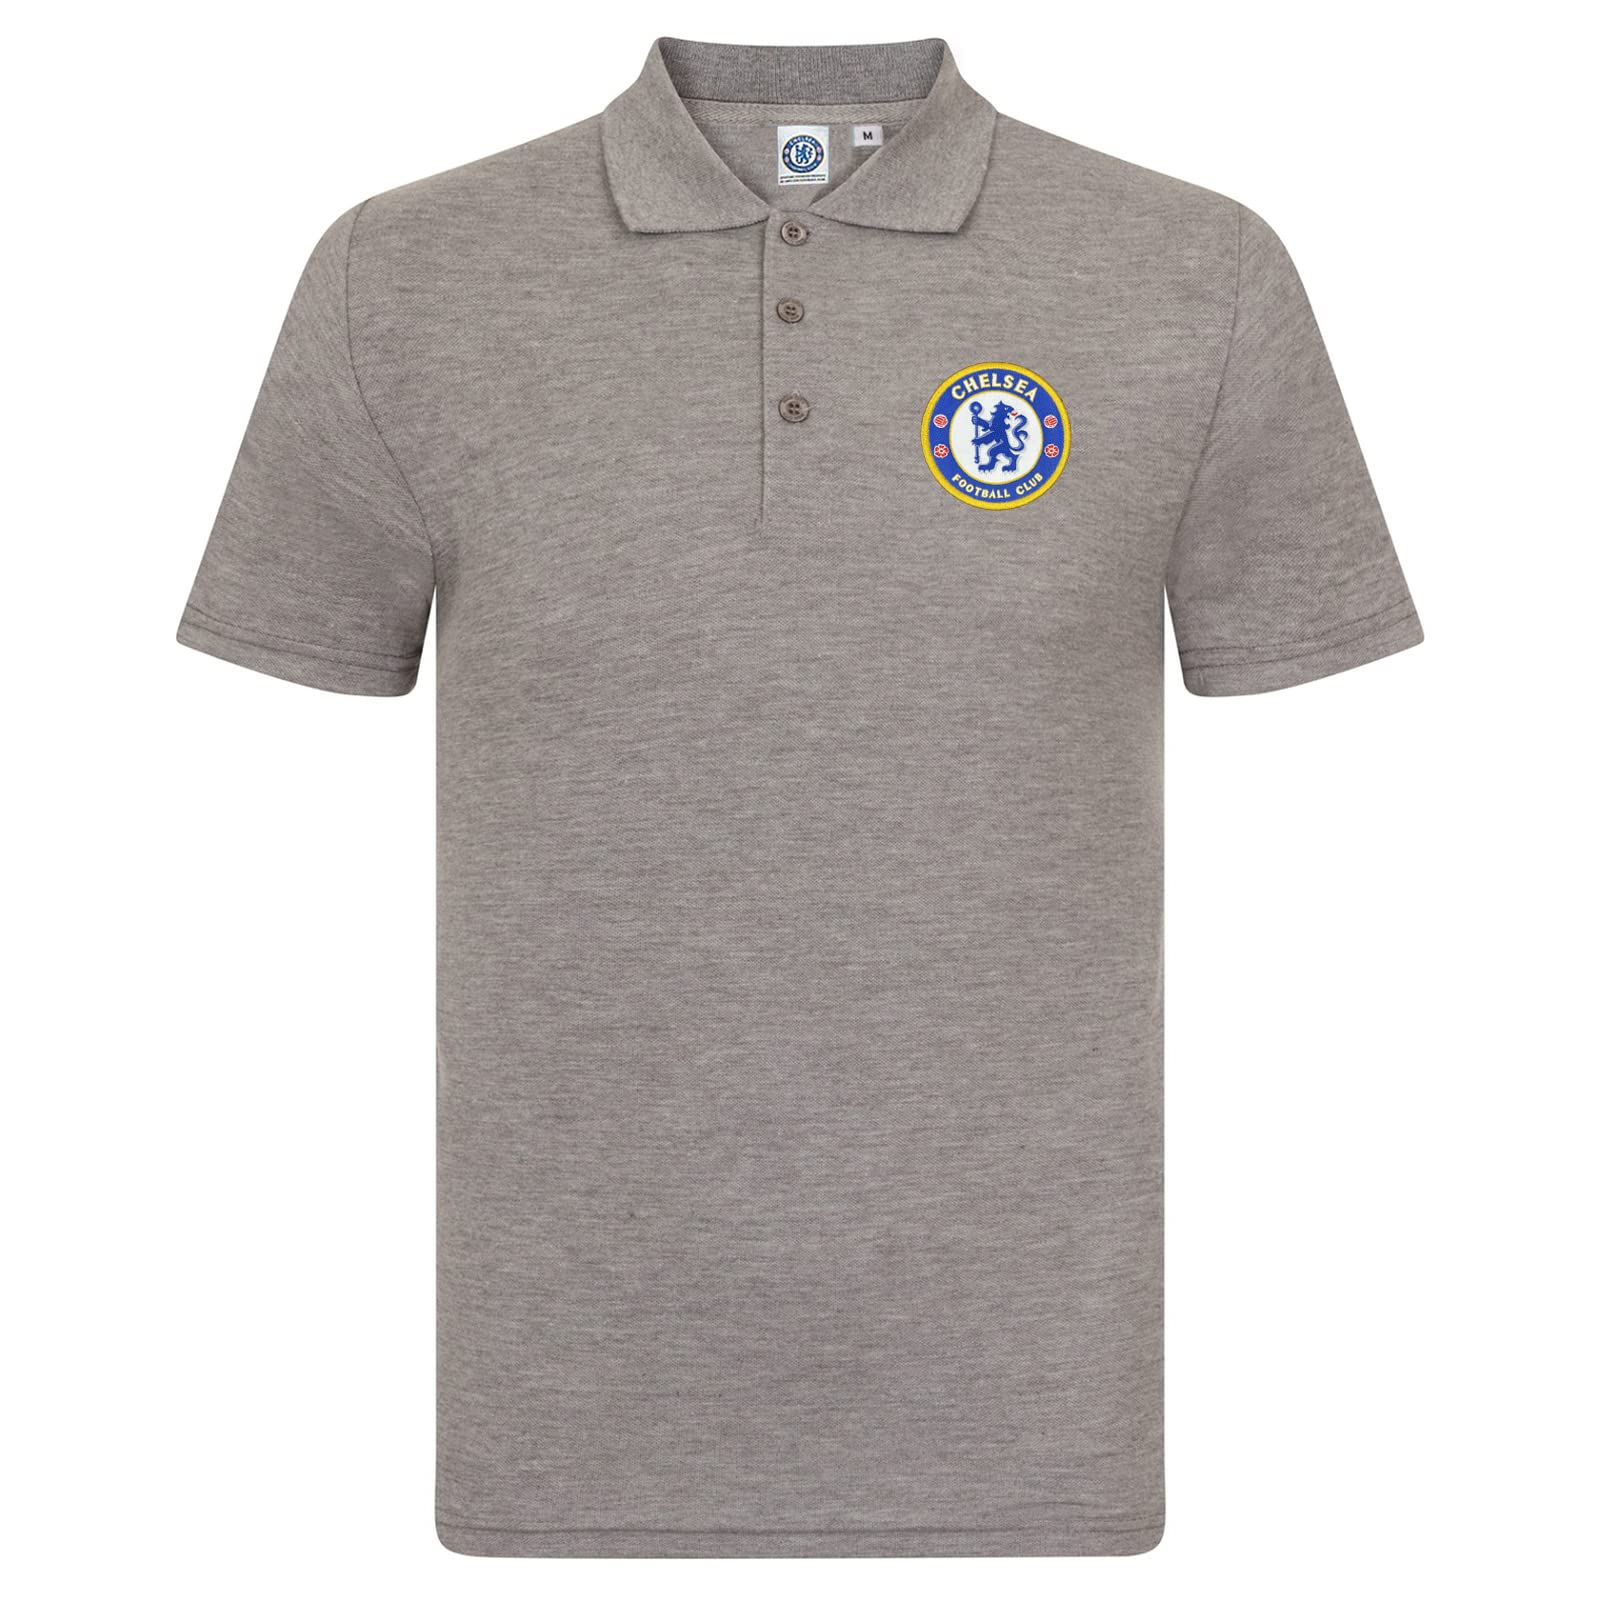 Chelsea FC Herren Polo-Shirt mit originalem Fußball-Wappen - Geschenkartikel - Grau - S